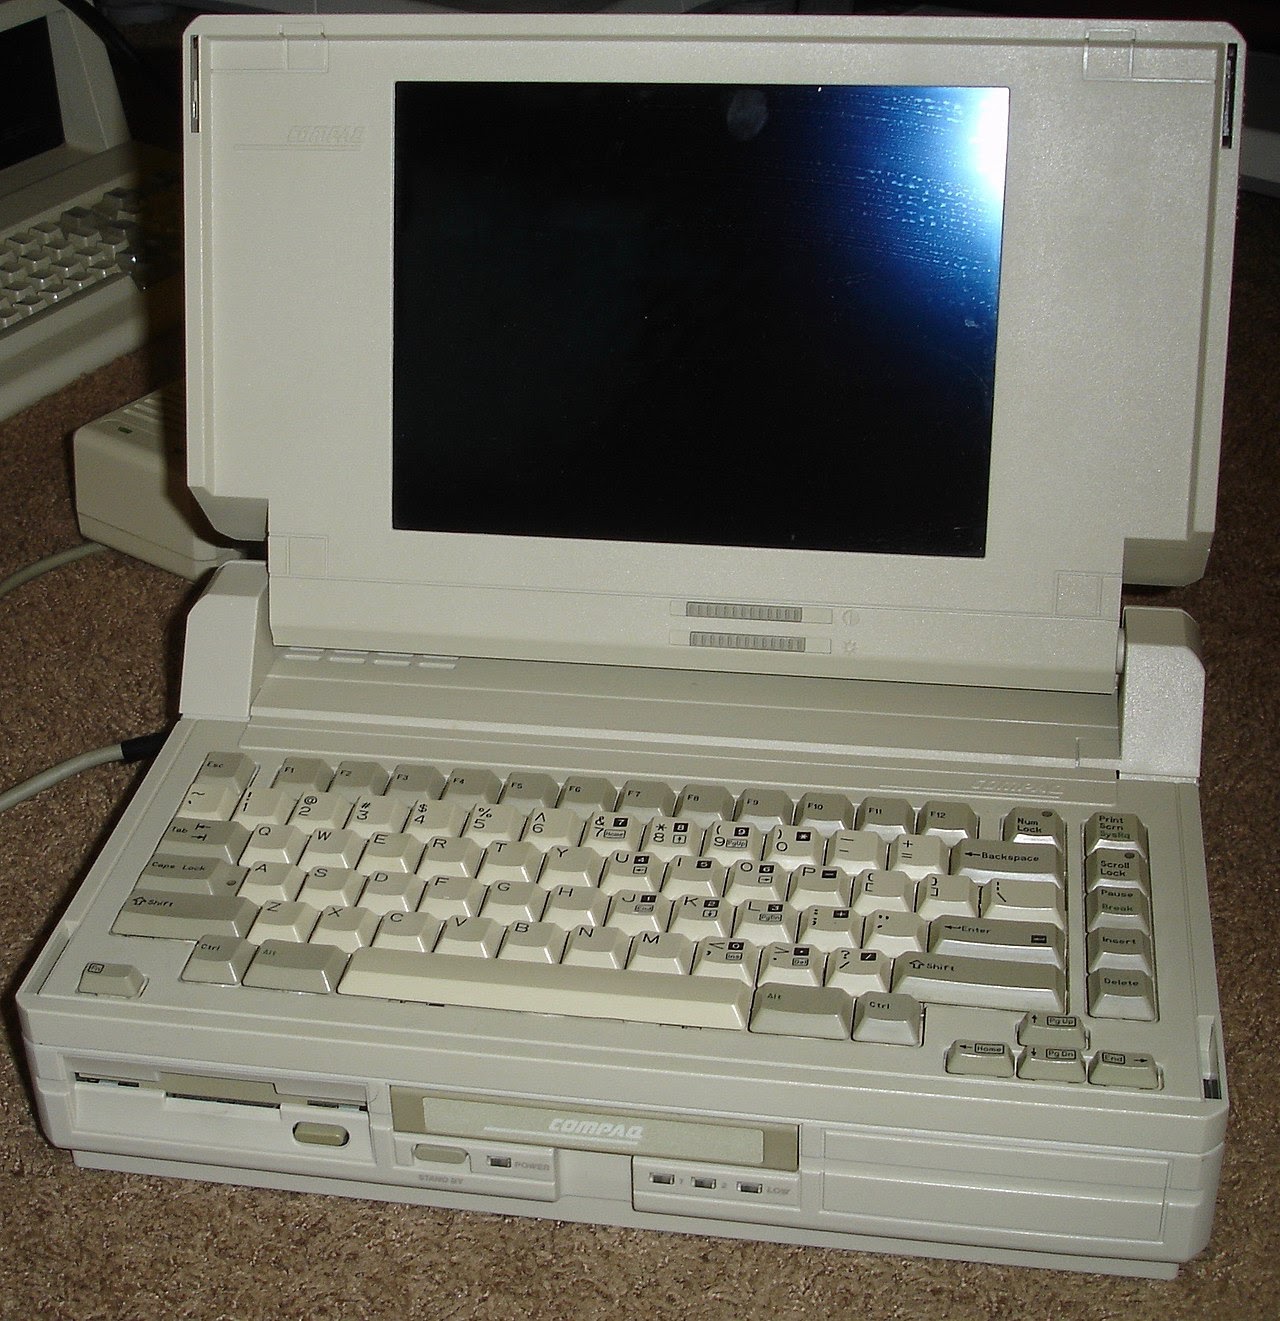 Compaq SLT-286, источник Wikipedia